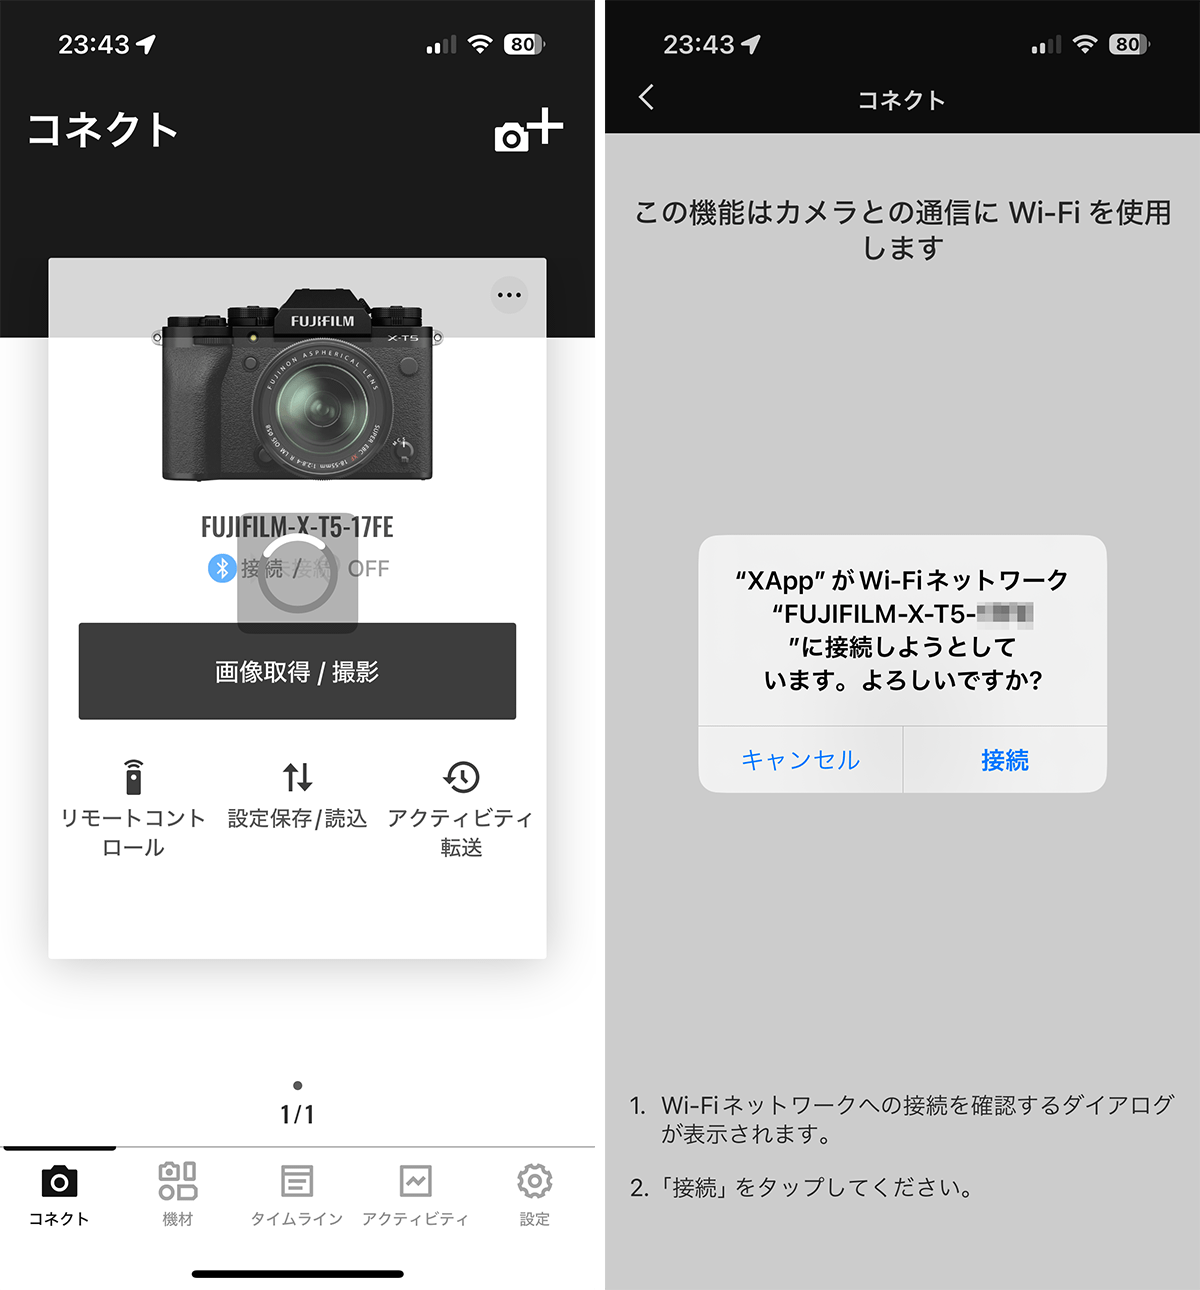 【富士フイルム】Xappですべての画像をまとめて転送する方法